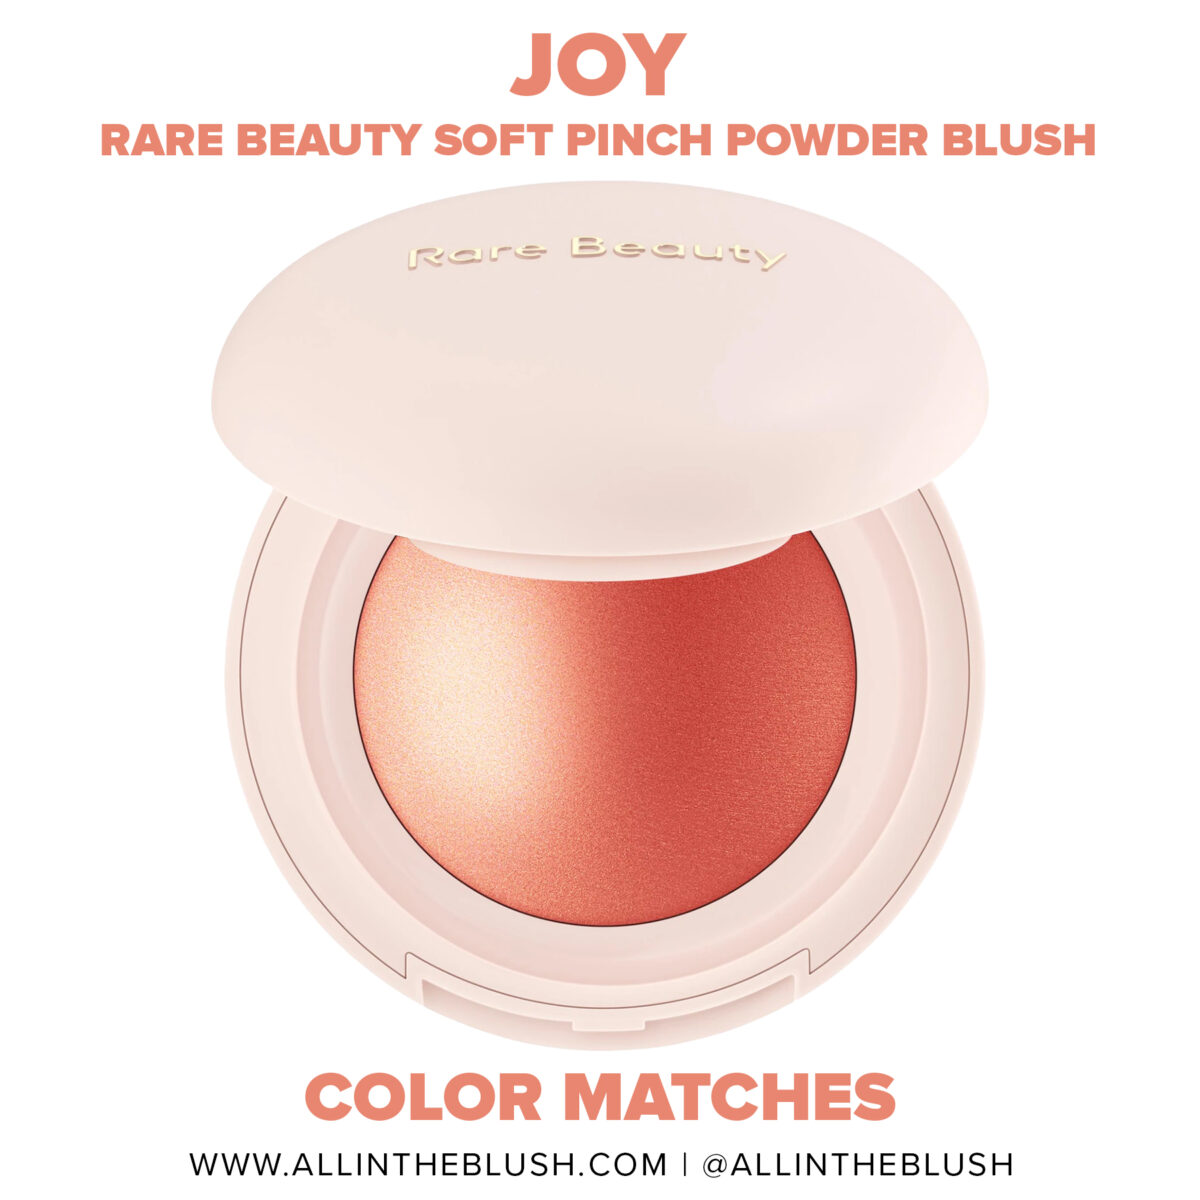 Rare Beauty Joy Soft Pinch Luminous Powder Blush Dupes